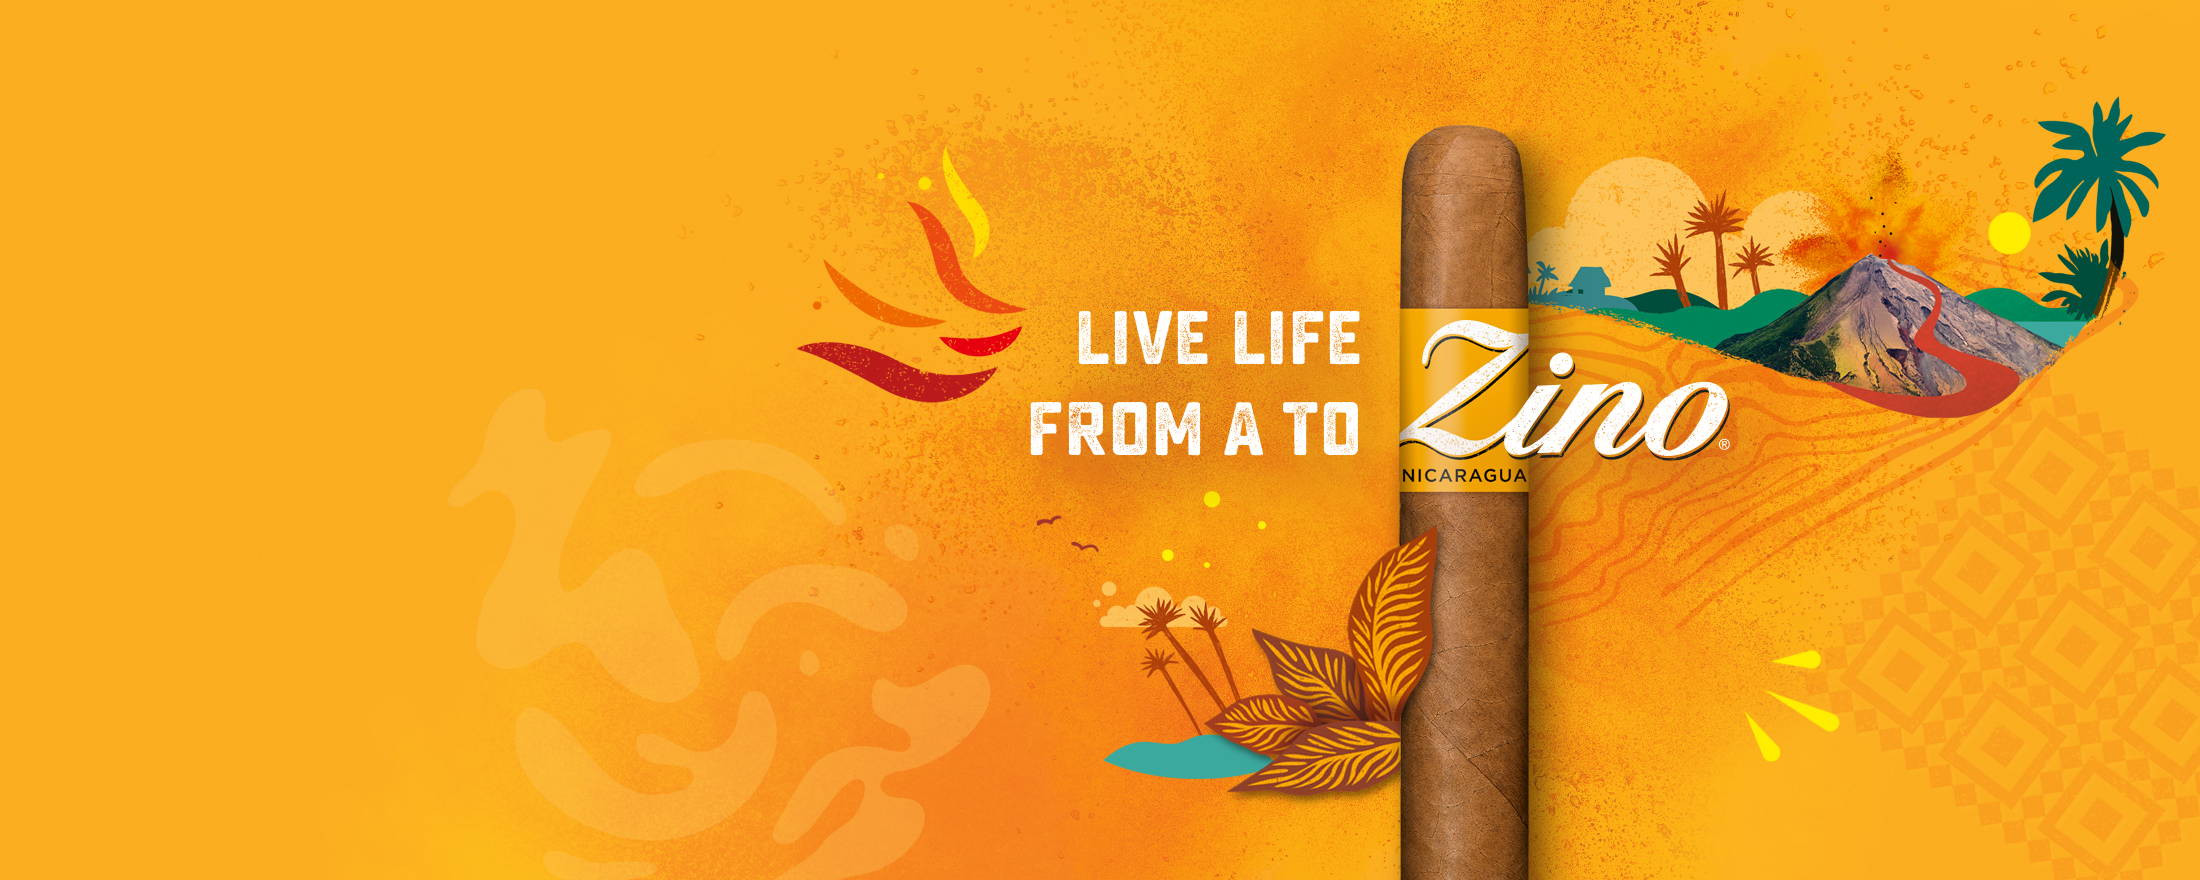 Zino Nicaragua  Zigarre mit gezeichntetm Stimmungsbild , Vulkan, Palmen, Tabakblätter